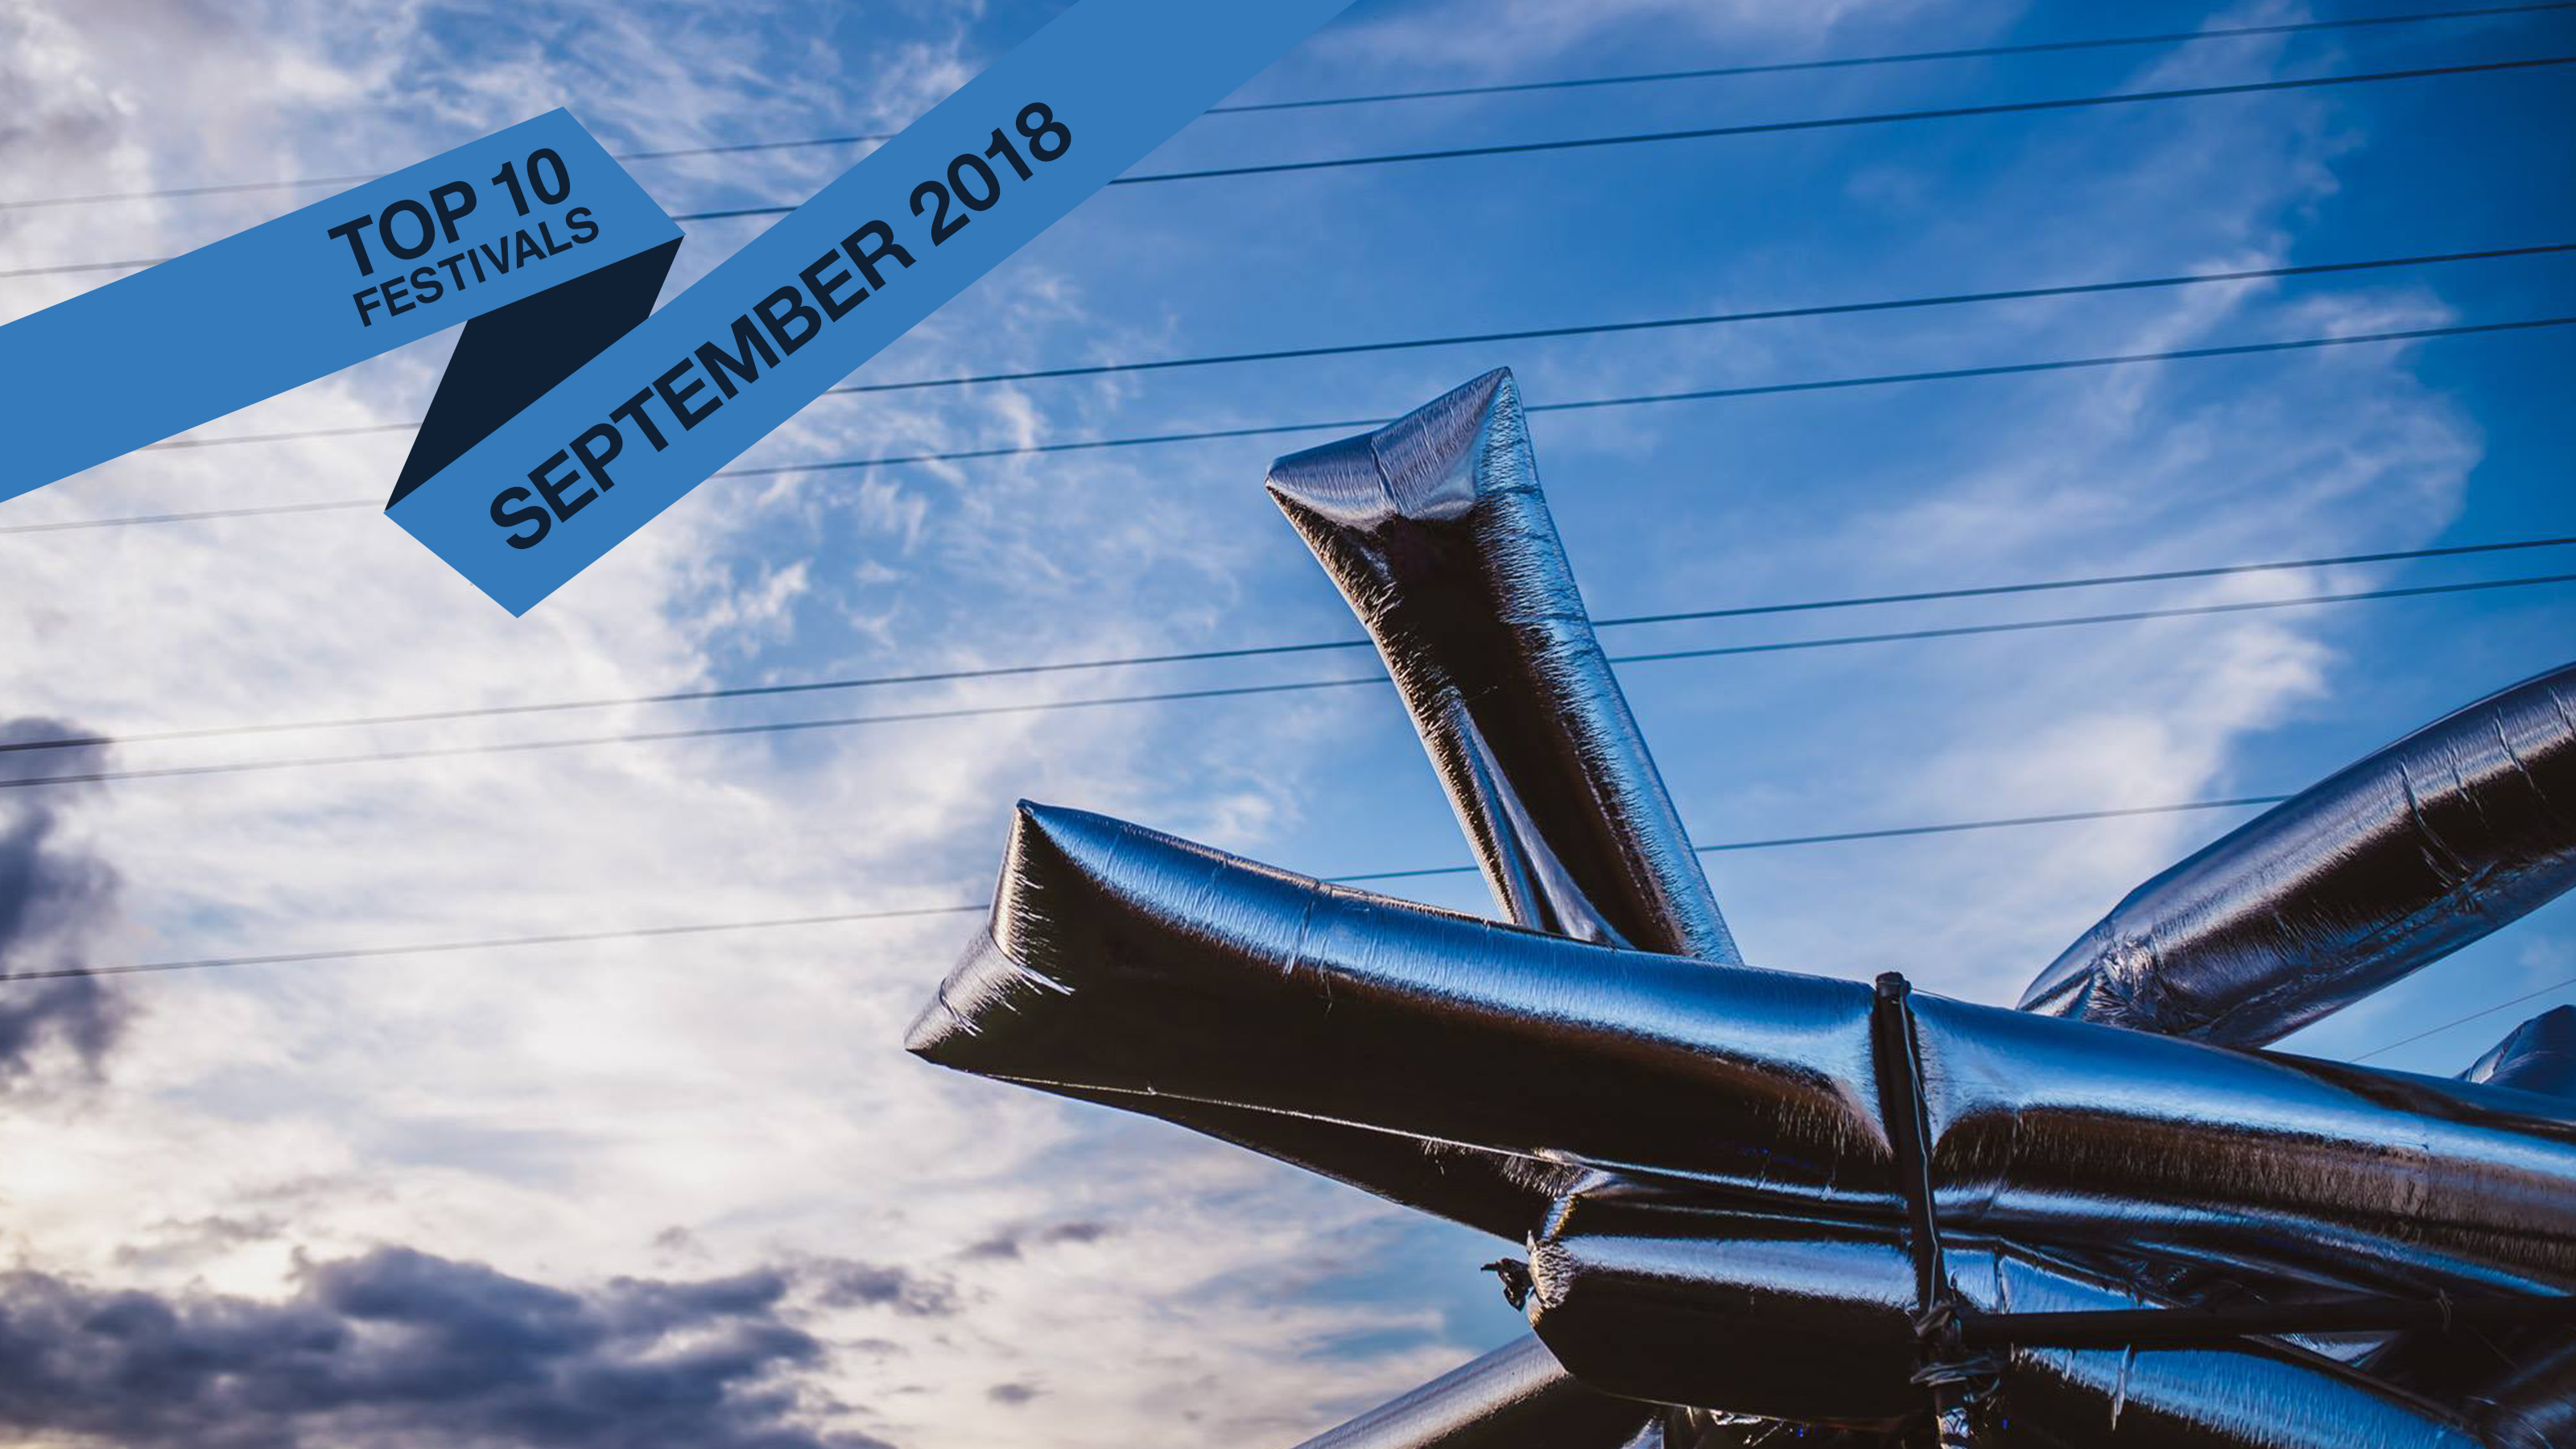 Top 10 September 2018 Festivals